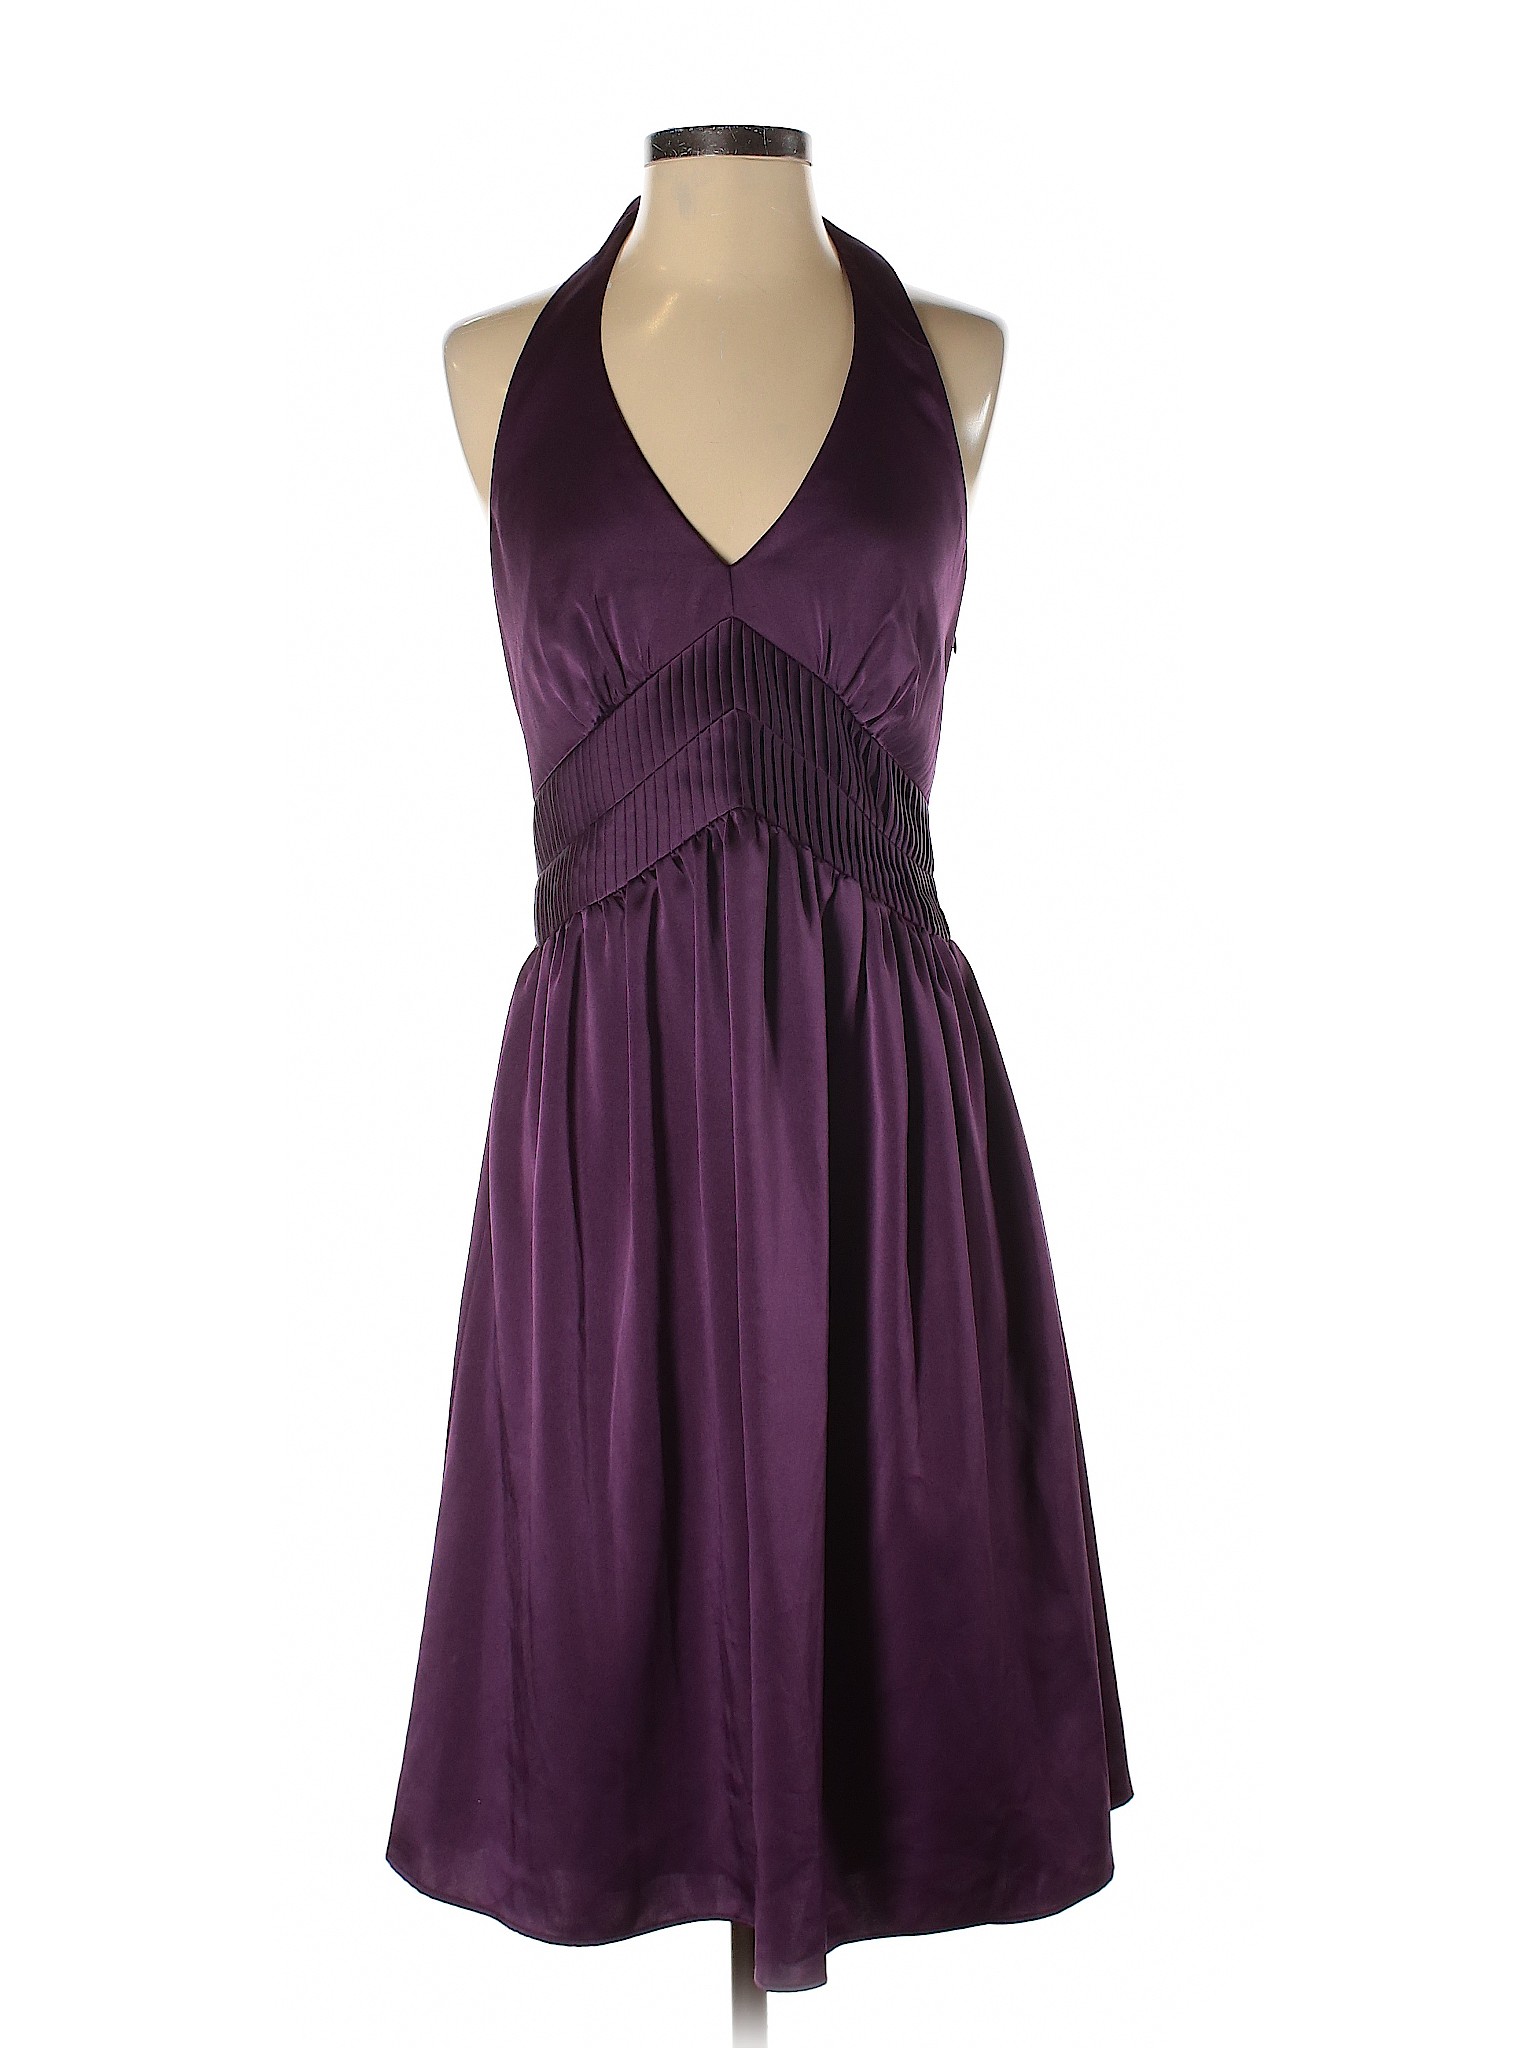 Calvin Klein Women Purple Cocktail Dress 4 | eBay